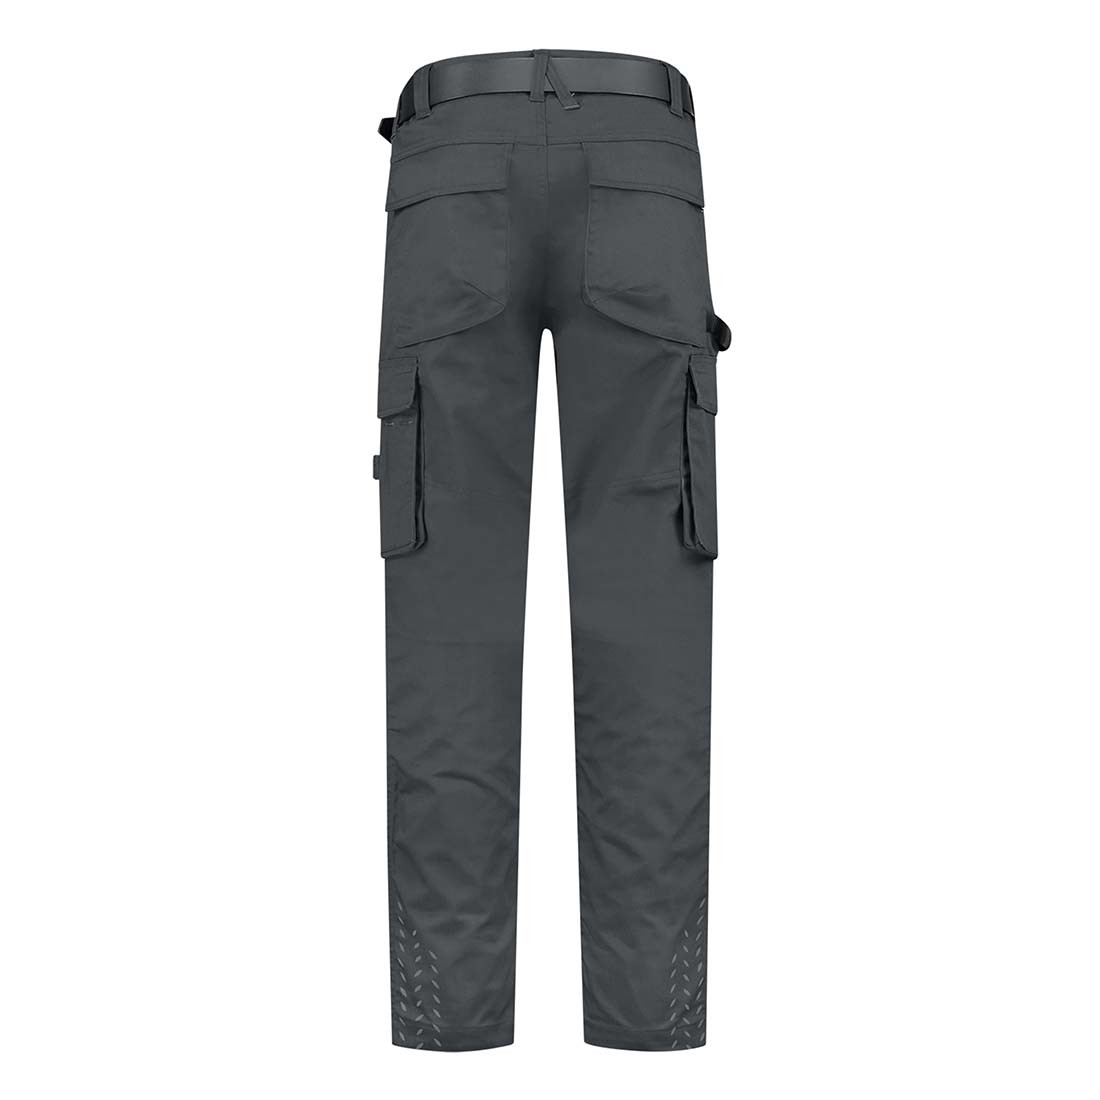 Pantalones de trabajo unisex - Ropa de protección